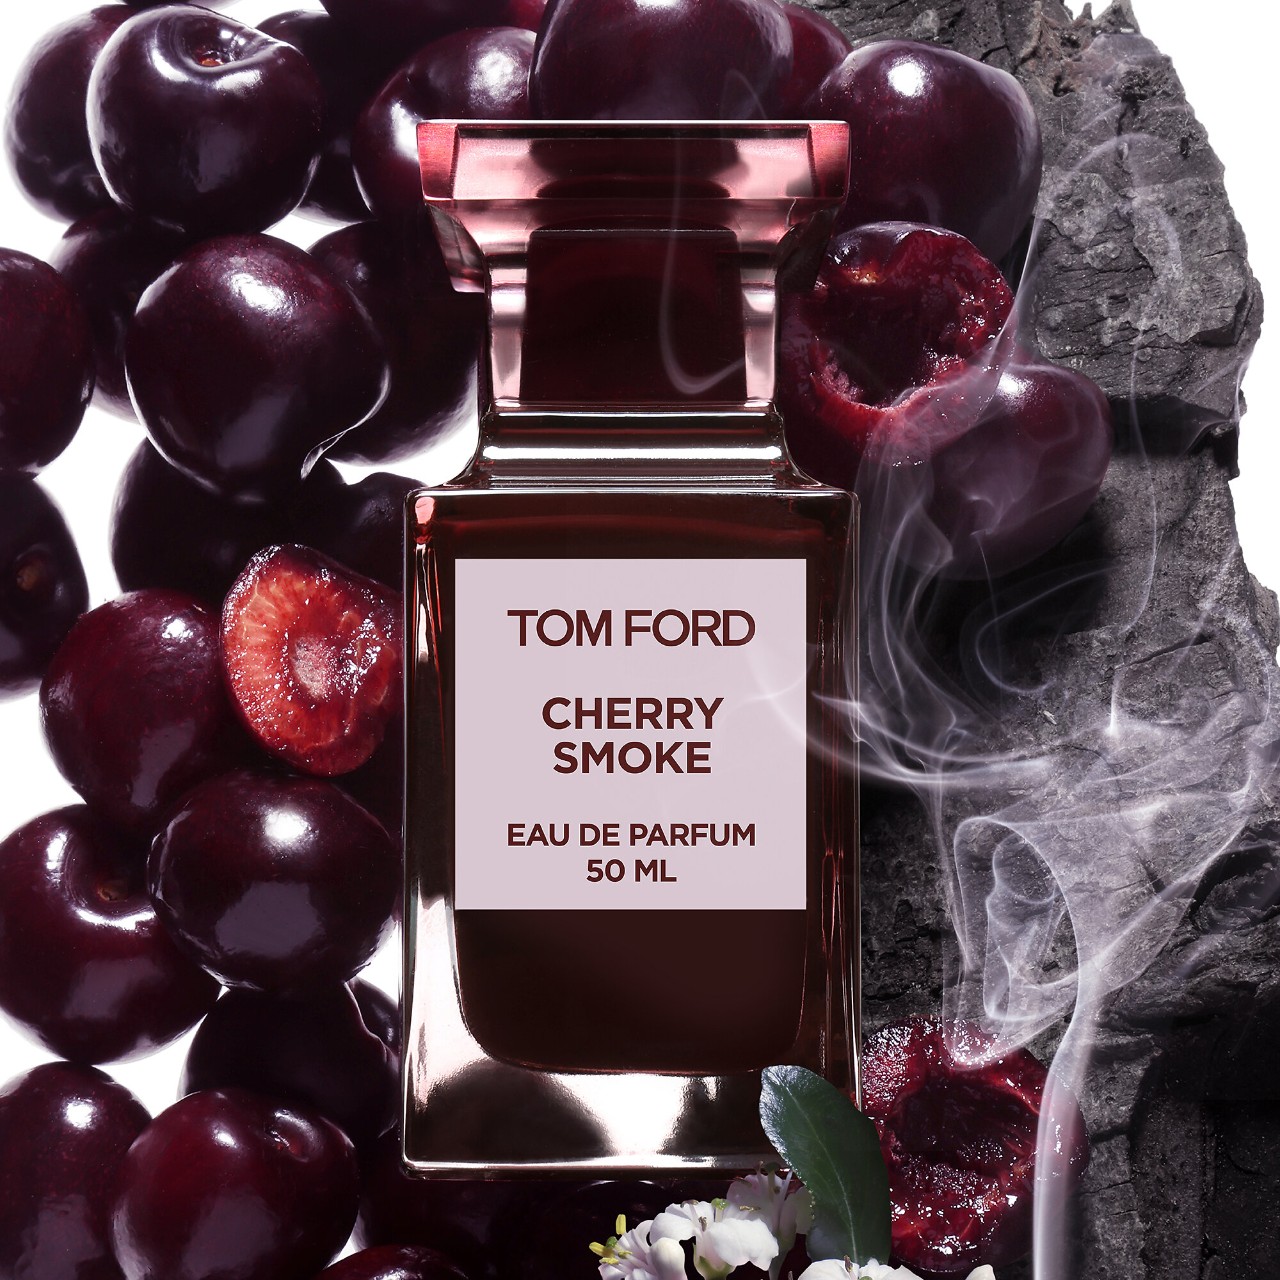 Cherry Smoke und Electric Cherry: Mehr Kirschen von Tom Ford! ~ Reviews